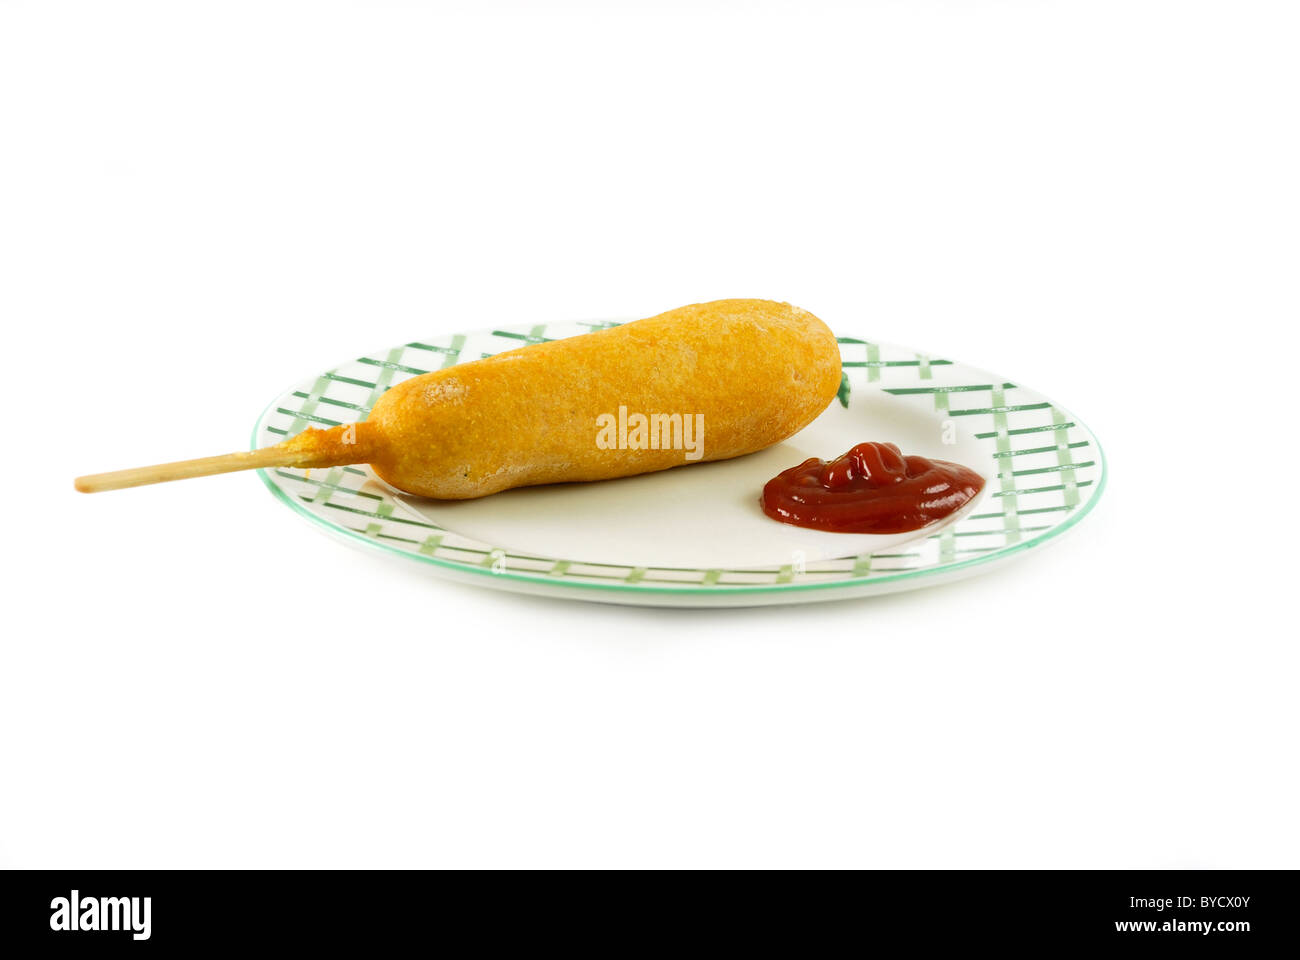 Cane di mais su una piastra con ketchup isolato su uno sfondo bianco Foto Stock